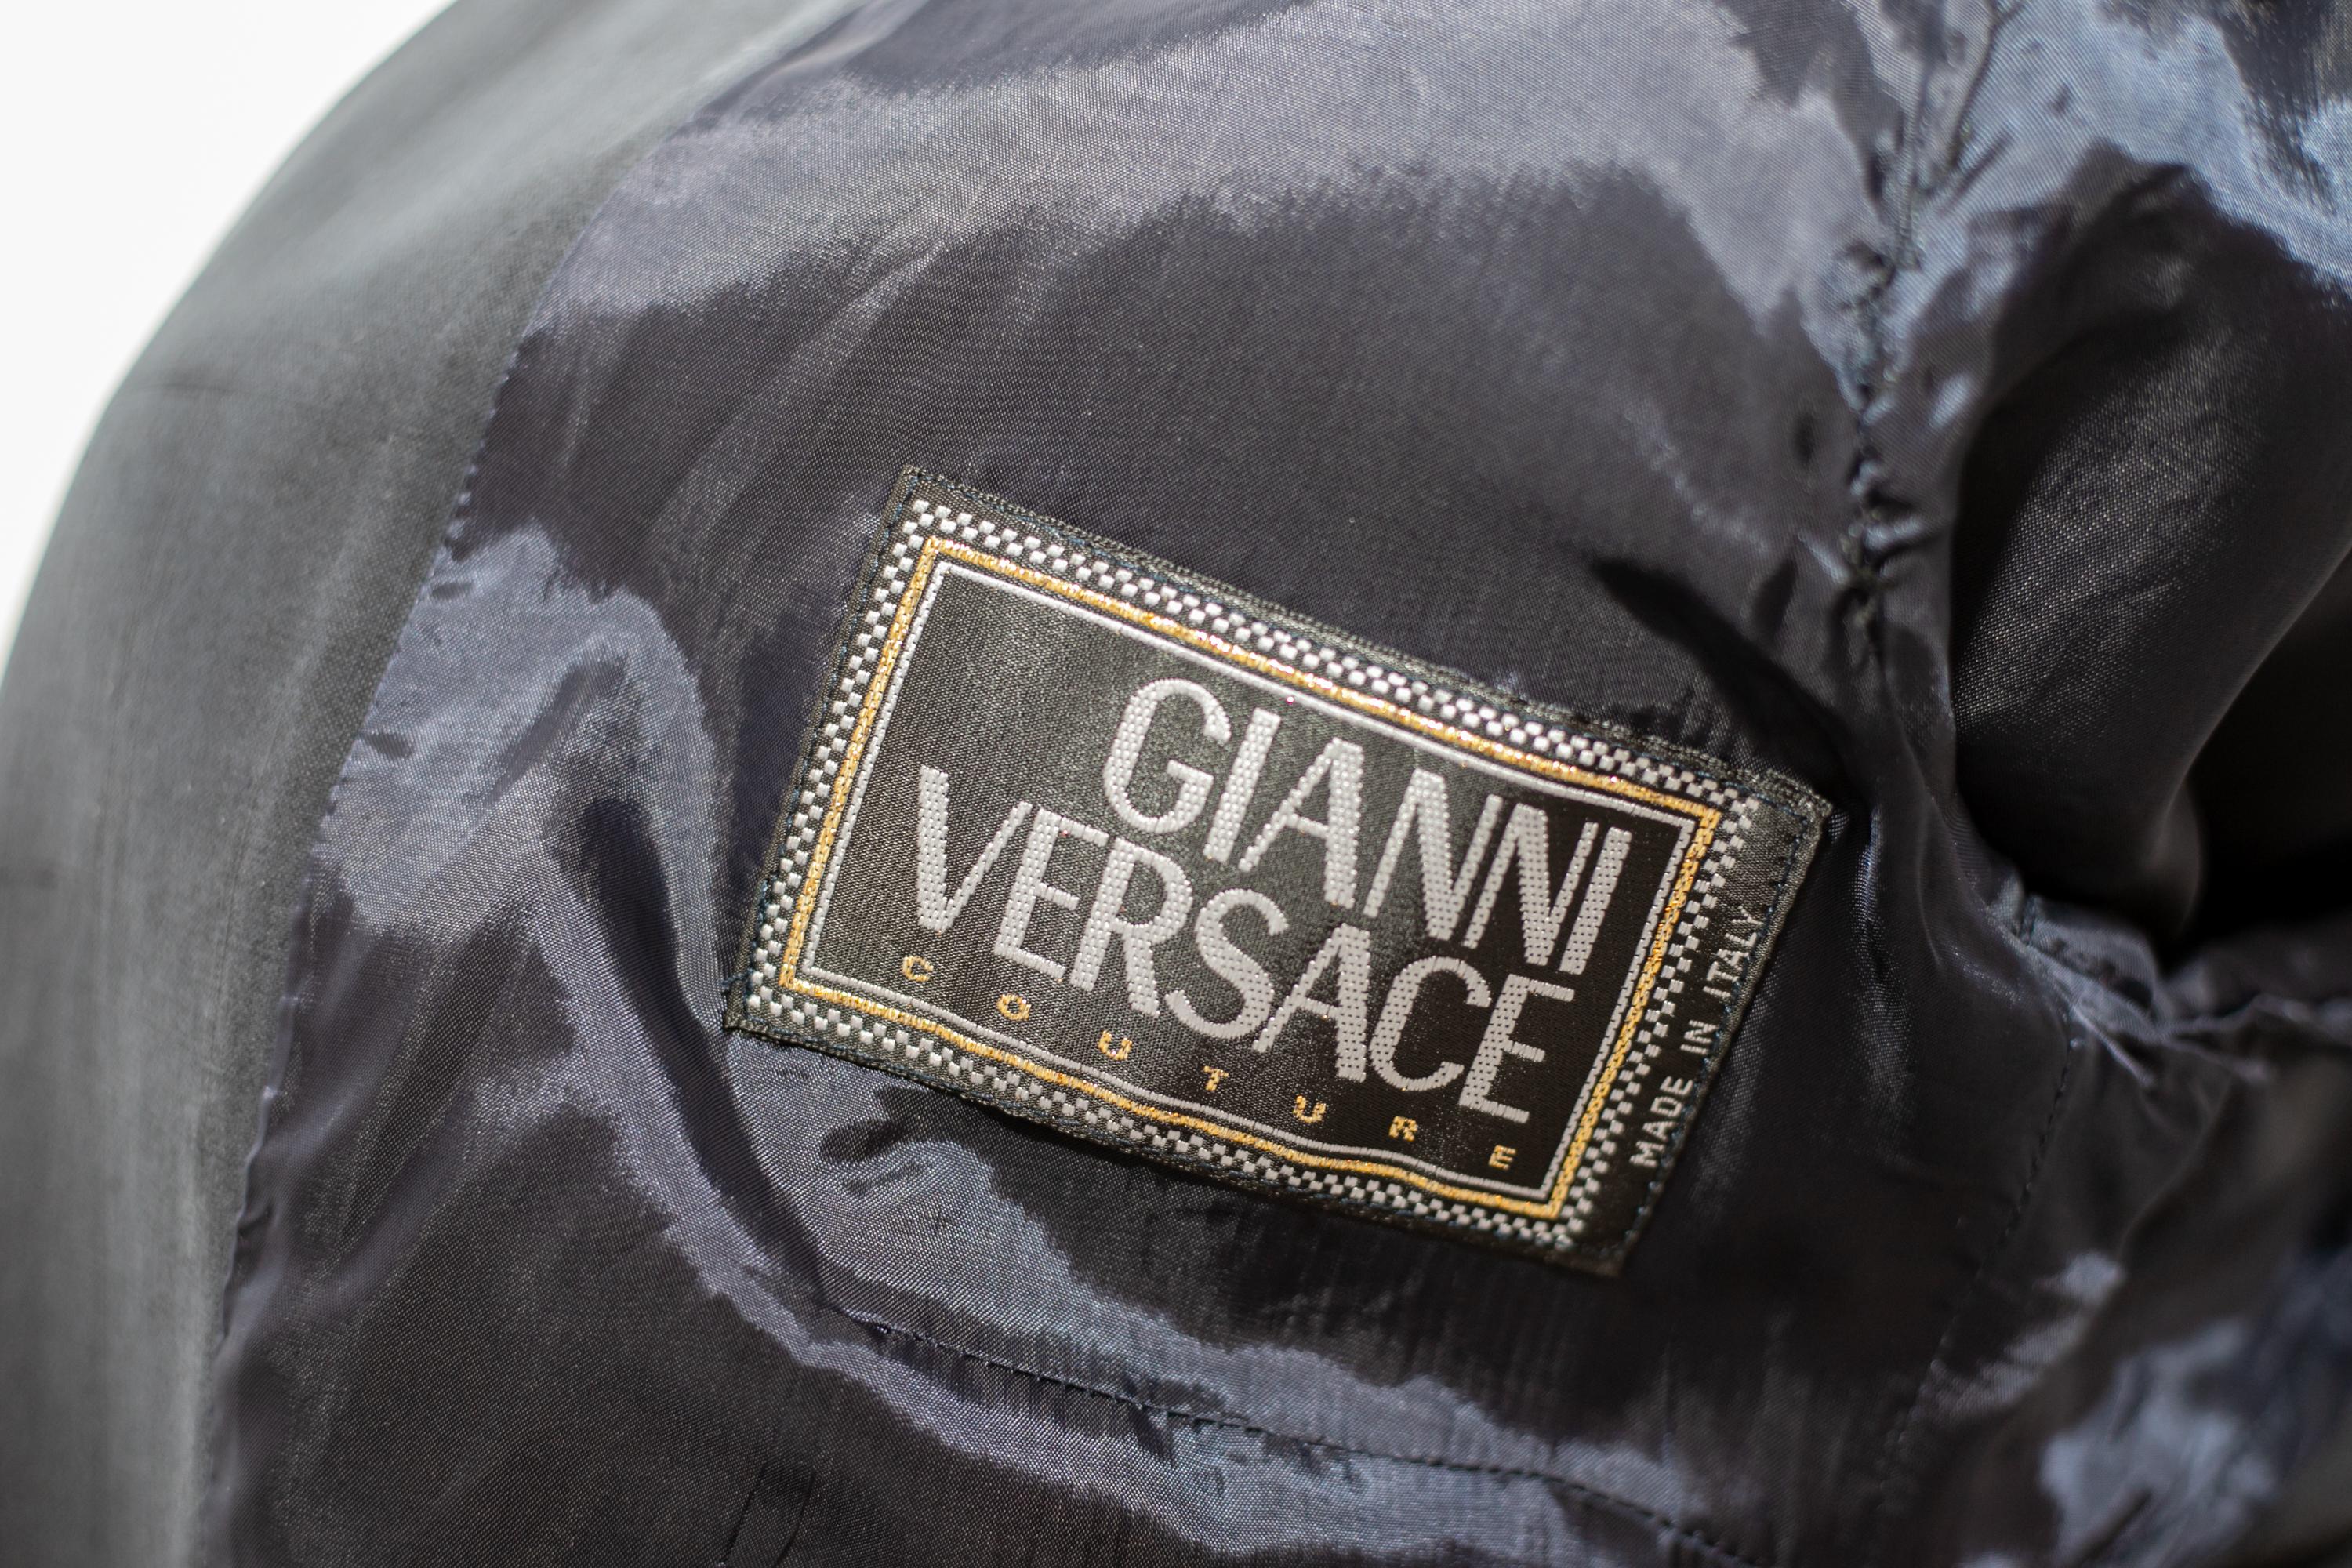 Rare veste noire conçue par le grand Gianni Versace dans les années 1980, fabriquée en Italie. Étiquette originale à l'intérieur.
La jaquette a des lignes très douces mais directes.
La veste tombe délicatement sur vous et est entièrement réalisée en